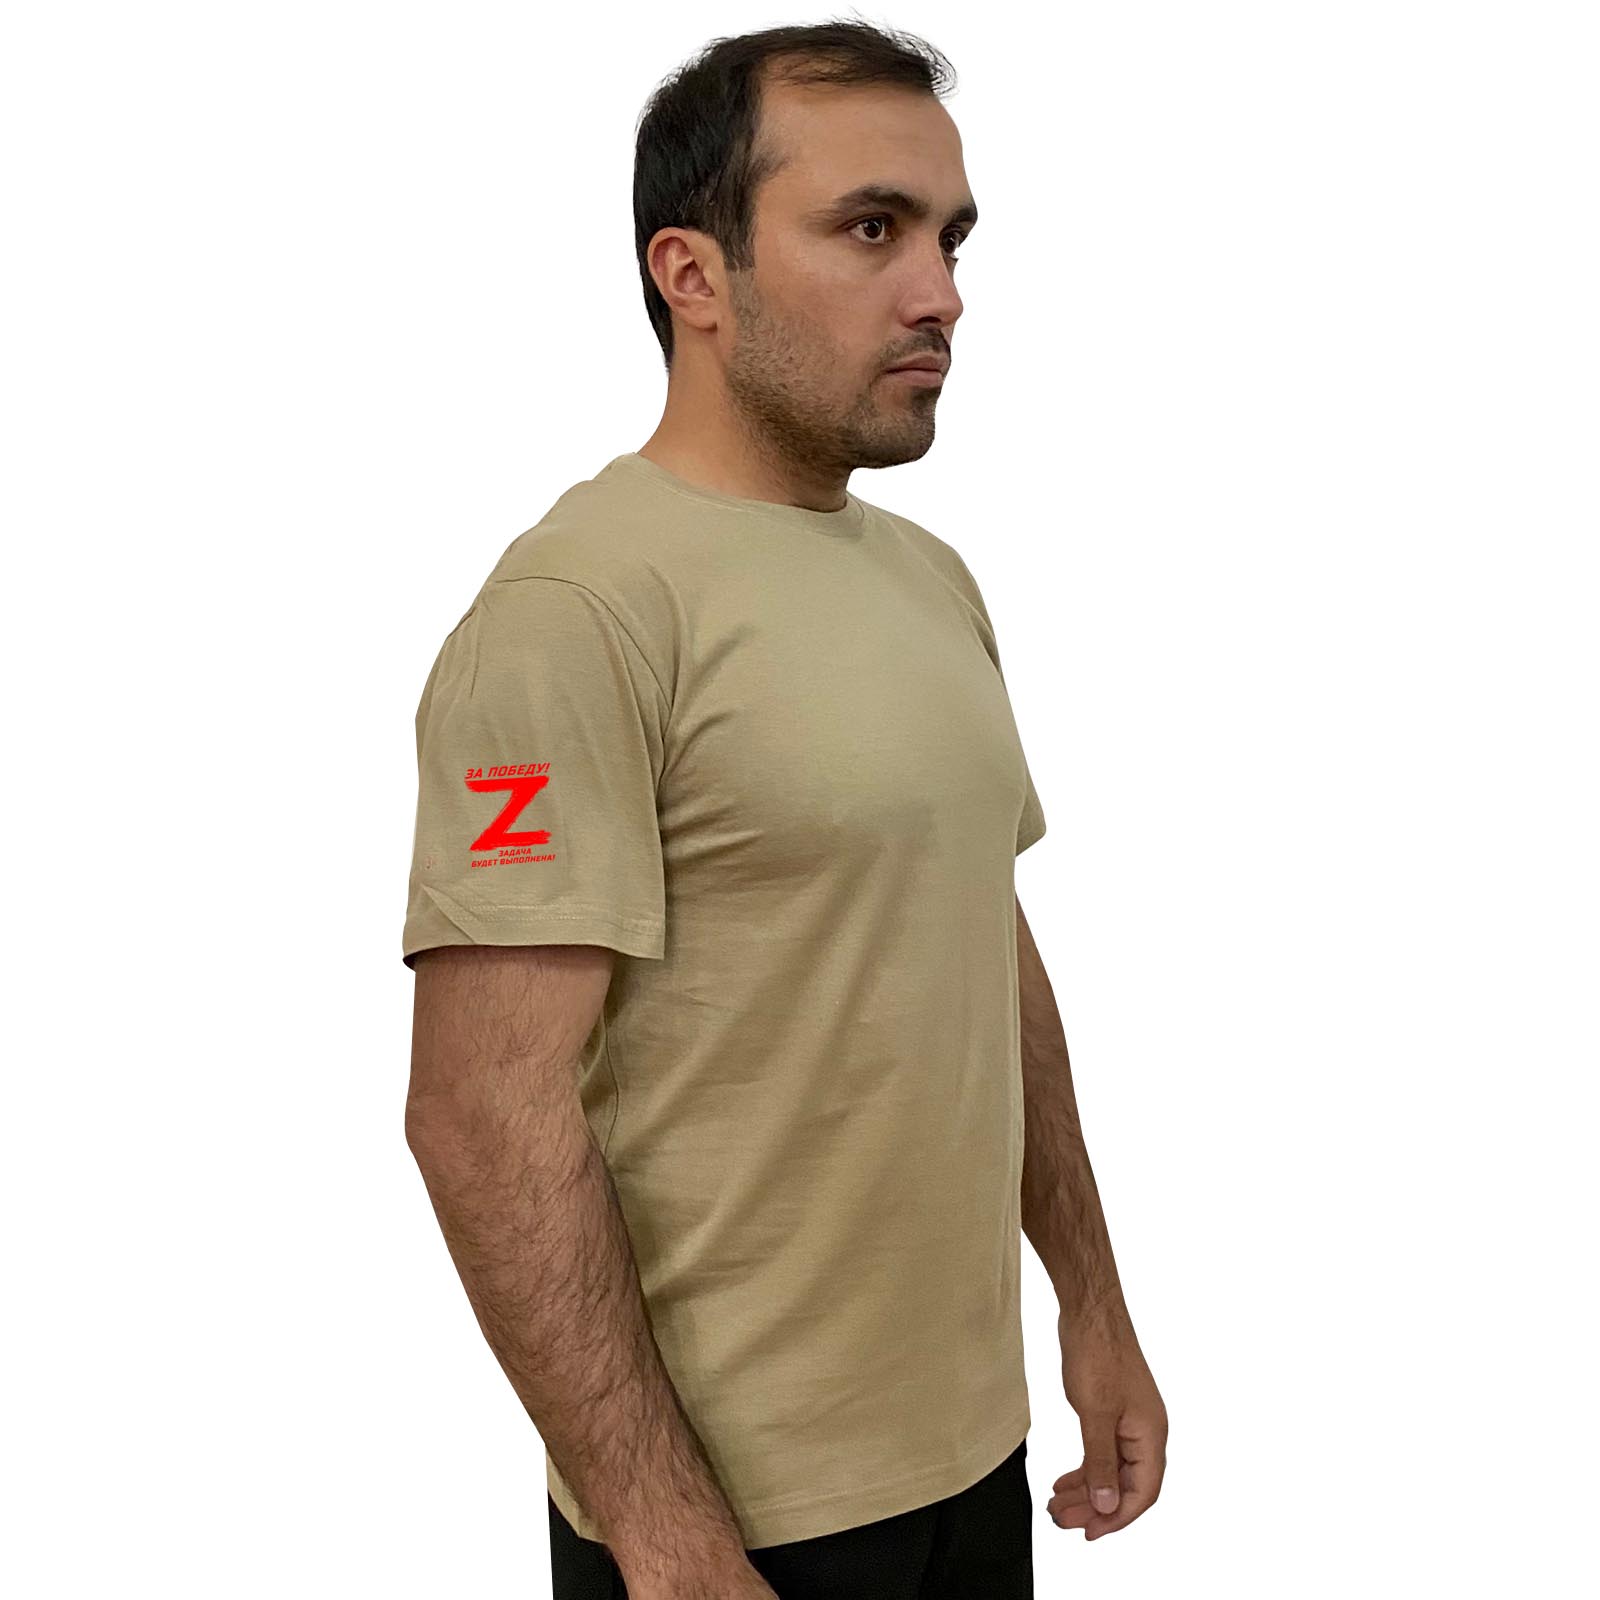 Купить строгую мужскую футболку с литерой Z онлайн